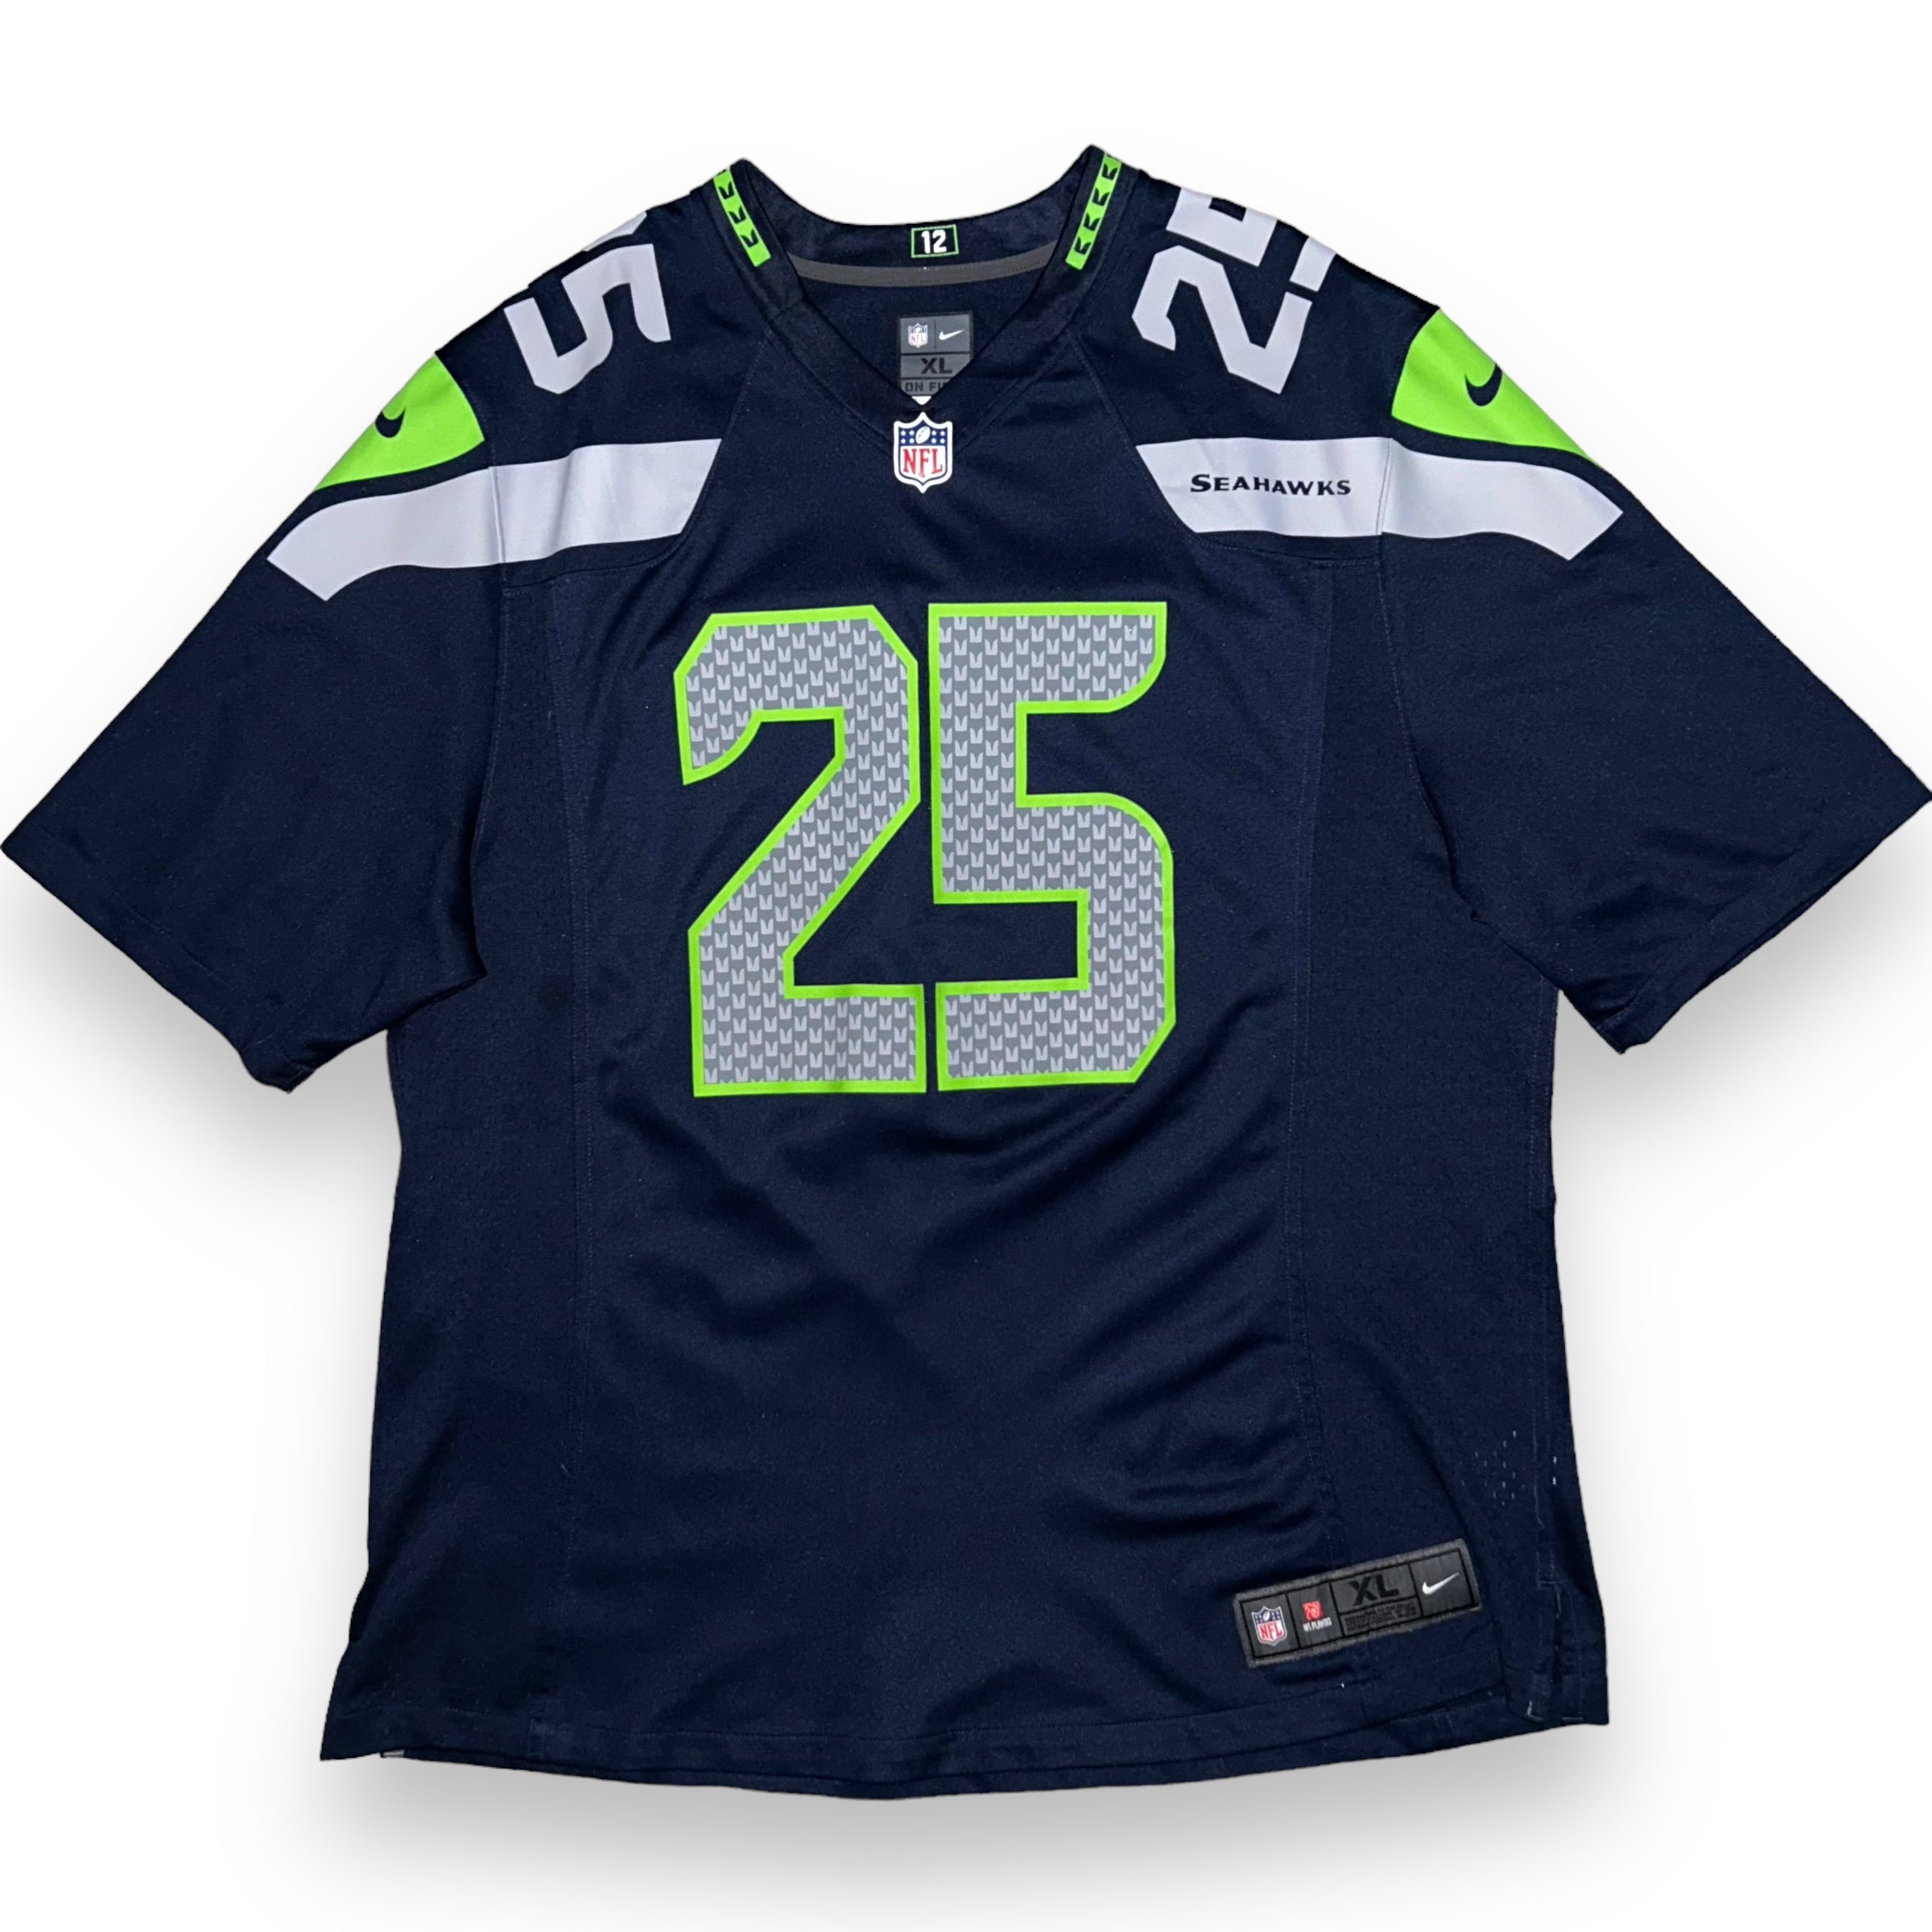 Seattle Seahawks NFL Jersey Nike (XL)